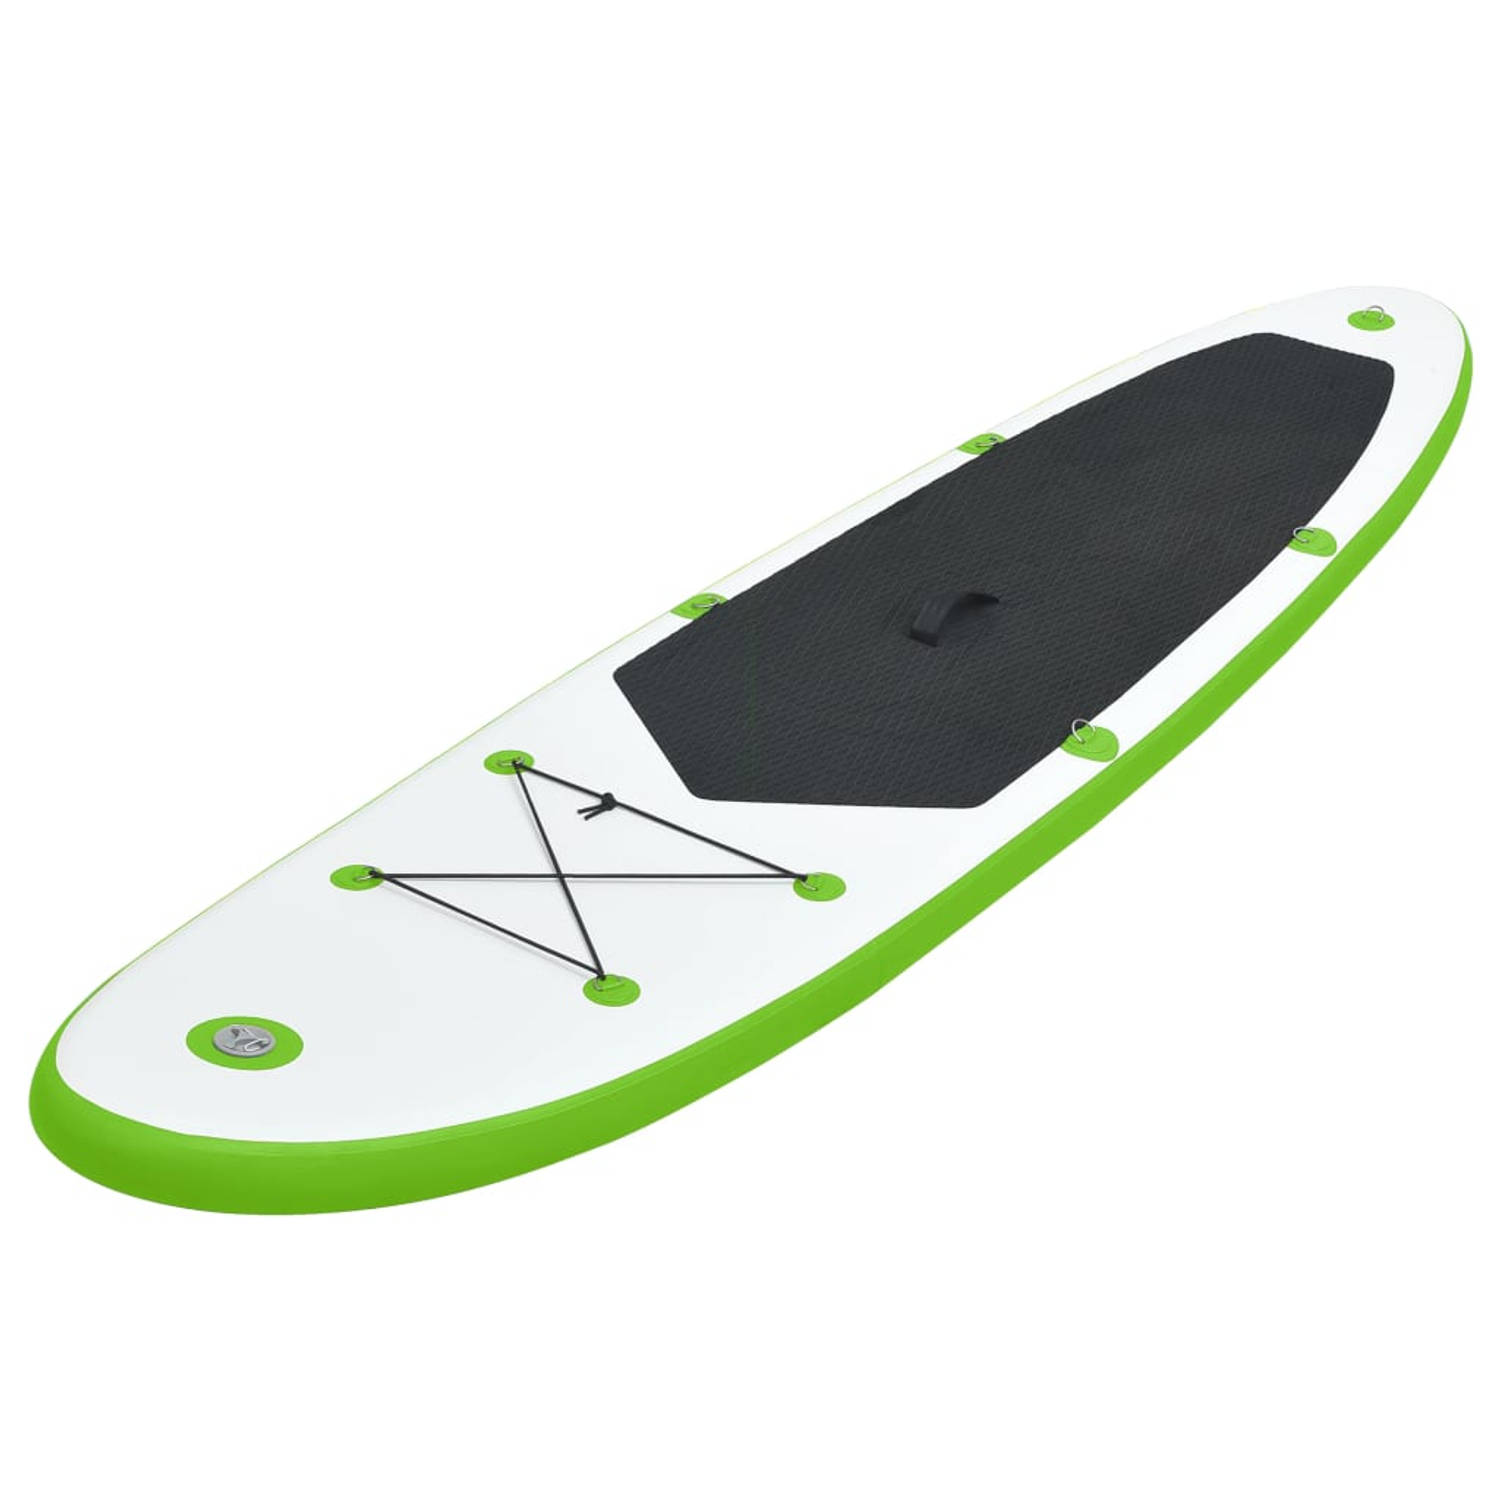 The Living Store SUP Board - Opblaasbaar Stand Up Paddleboard - 390 x 81 x 10 cm - Groen en Wit - Draagvermogen 130 kg - Inclusief Peddel - Pomp en Draagtas